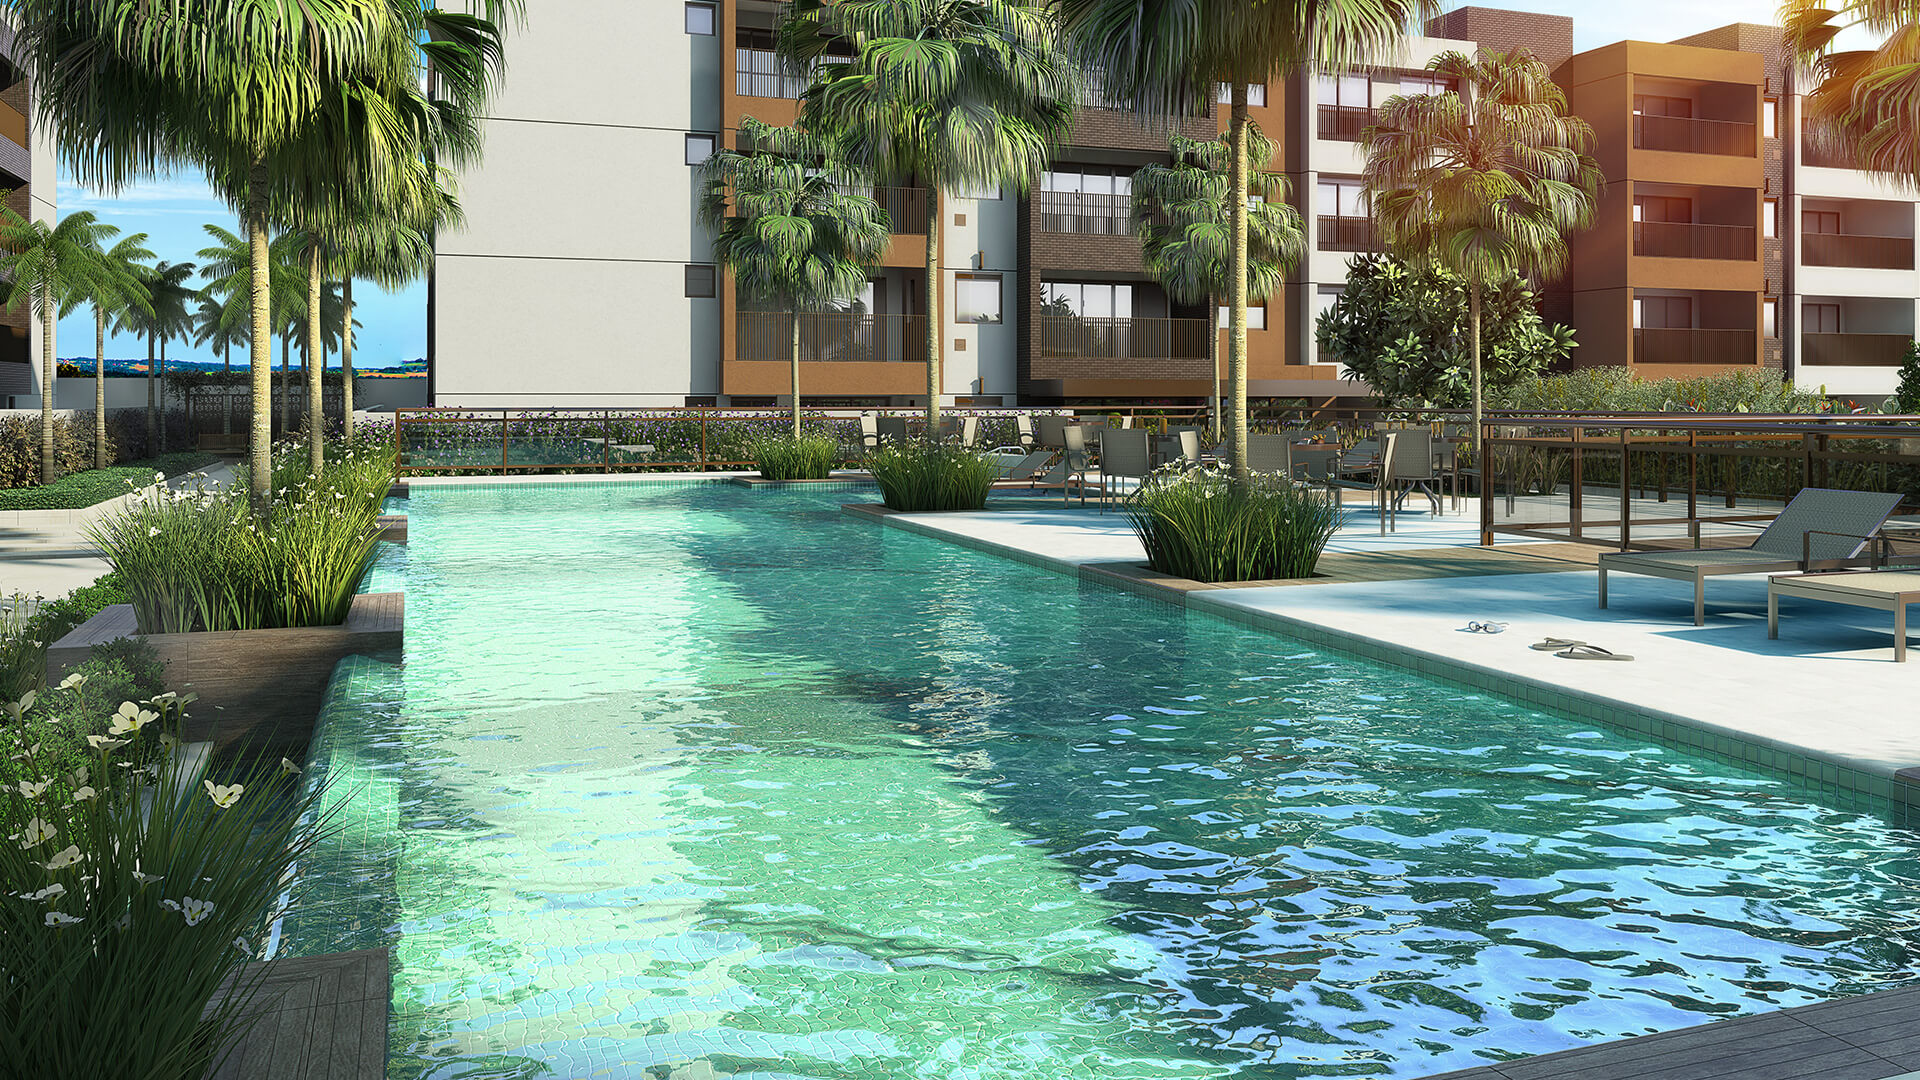 Vila Monumento terá clube de praia com Day Use em piscinas •  IpirangaFeelings